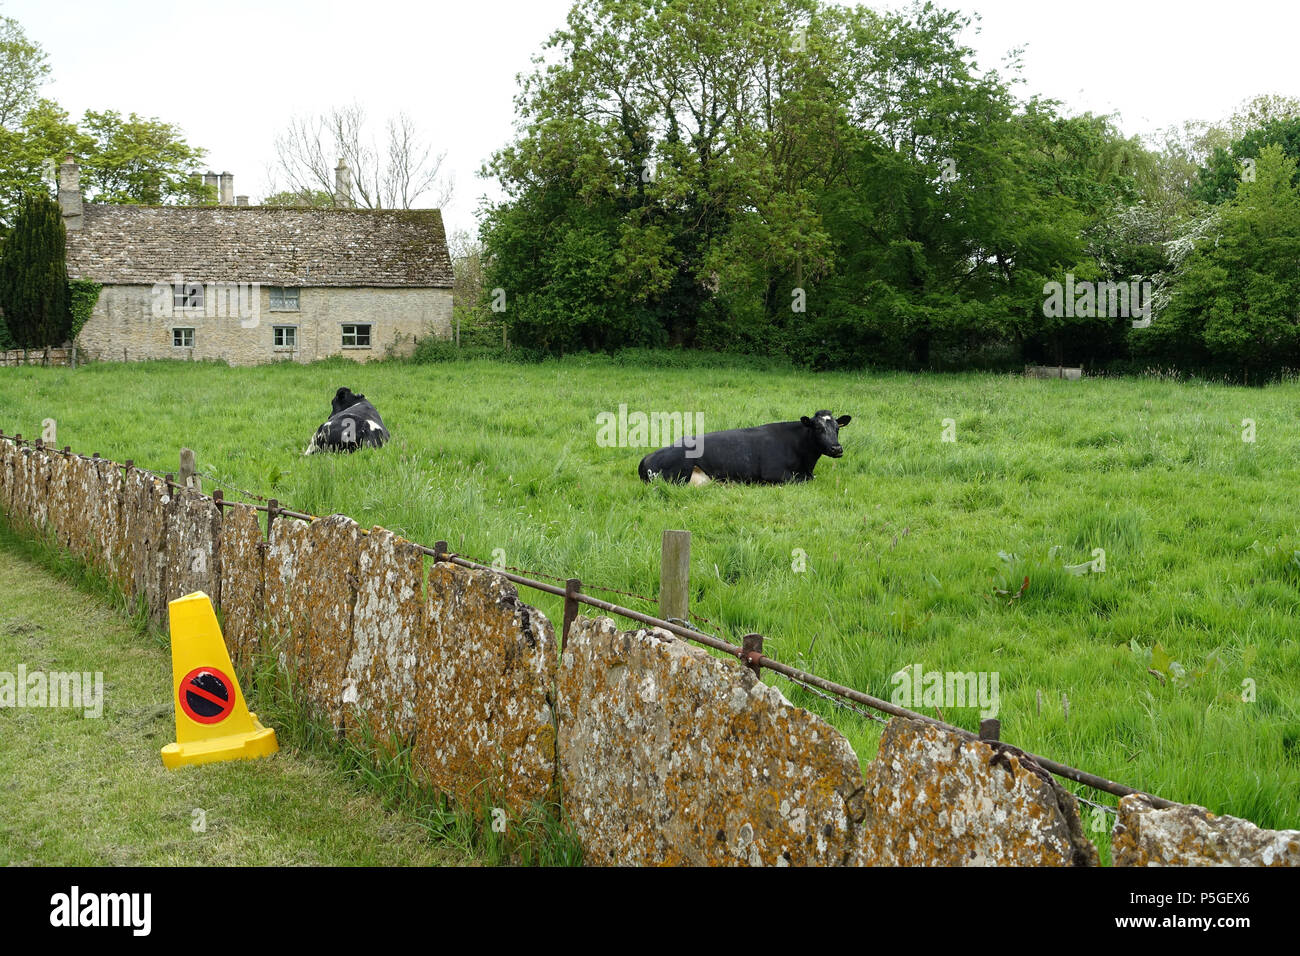 N/A. Anglais : Vaches - Kelmscott, Oxfordshire, Angleterre. 25 mai 2016, 06:46:03. Daderot 387 Vaches - Kelmscott, Oxfordshire, Angleterre - DSC09940 Banque D'Images